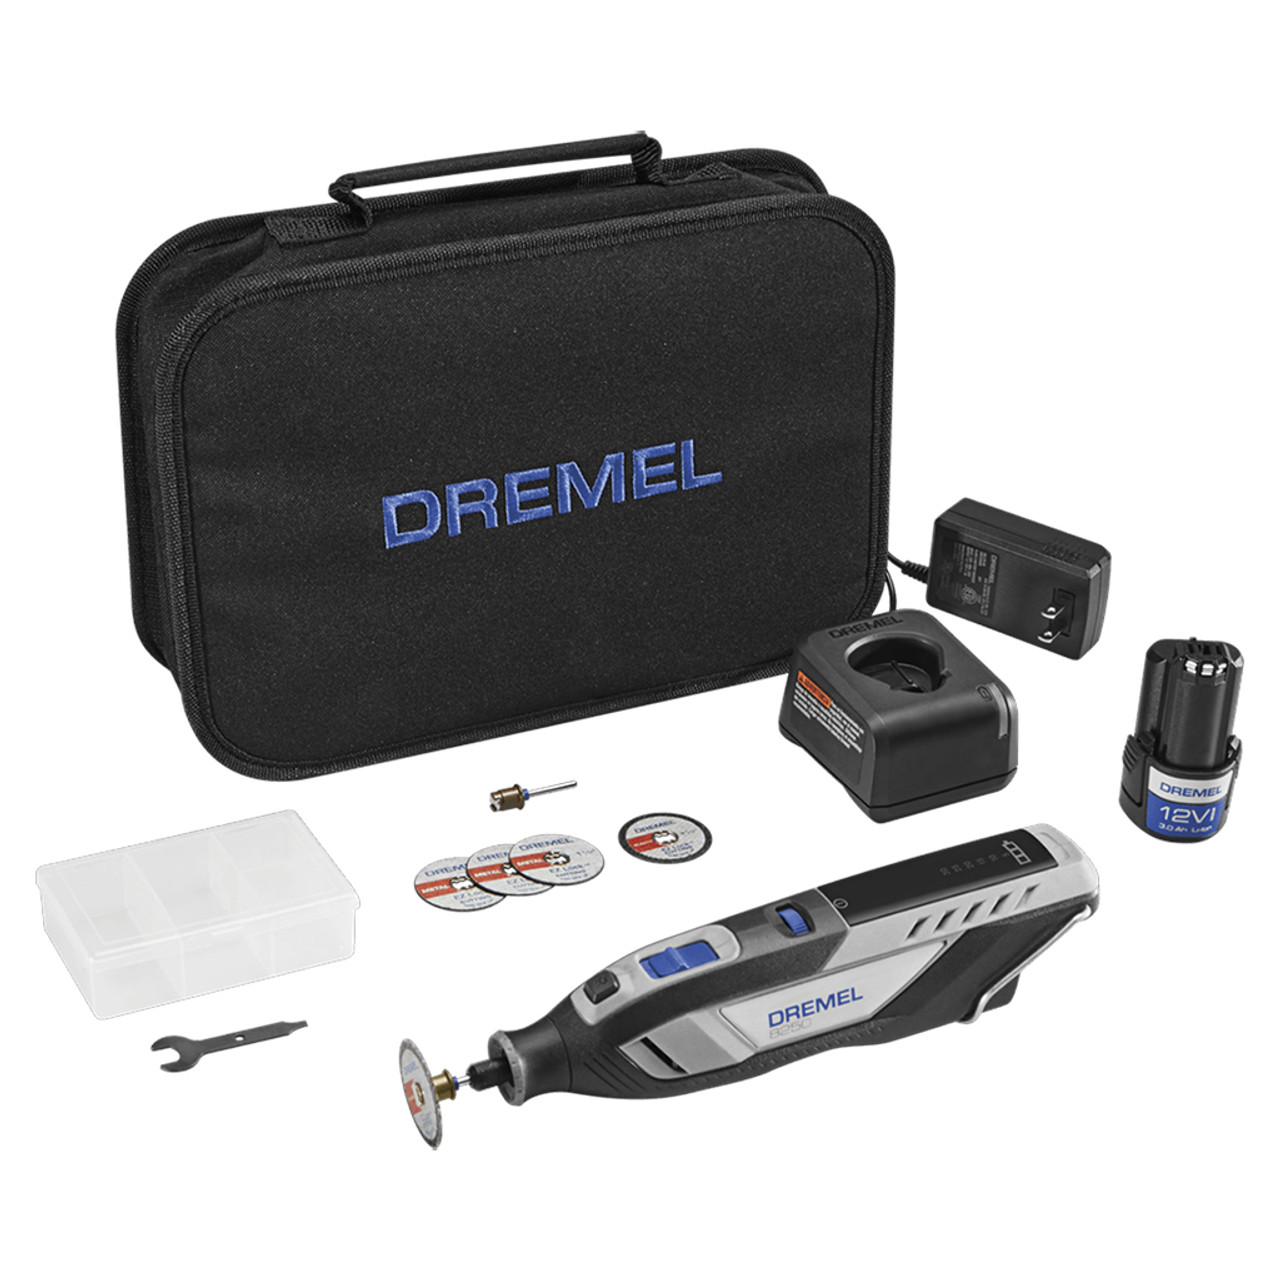 Dremel 8220 12V Max Lithium-ion Cordless Rotary Tool